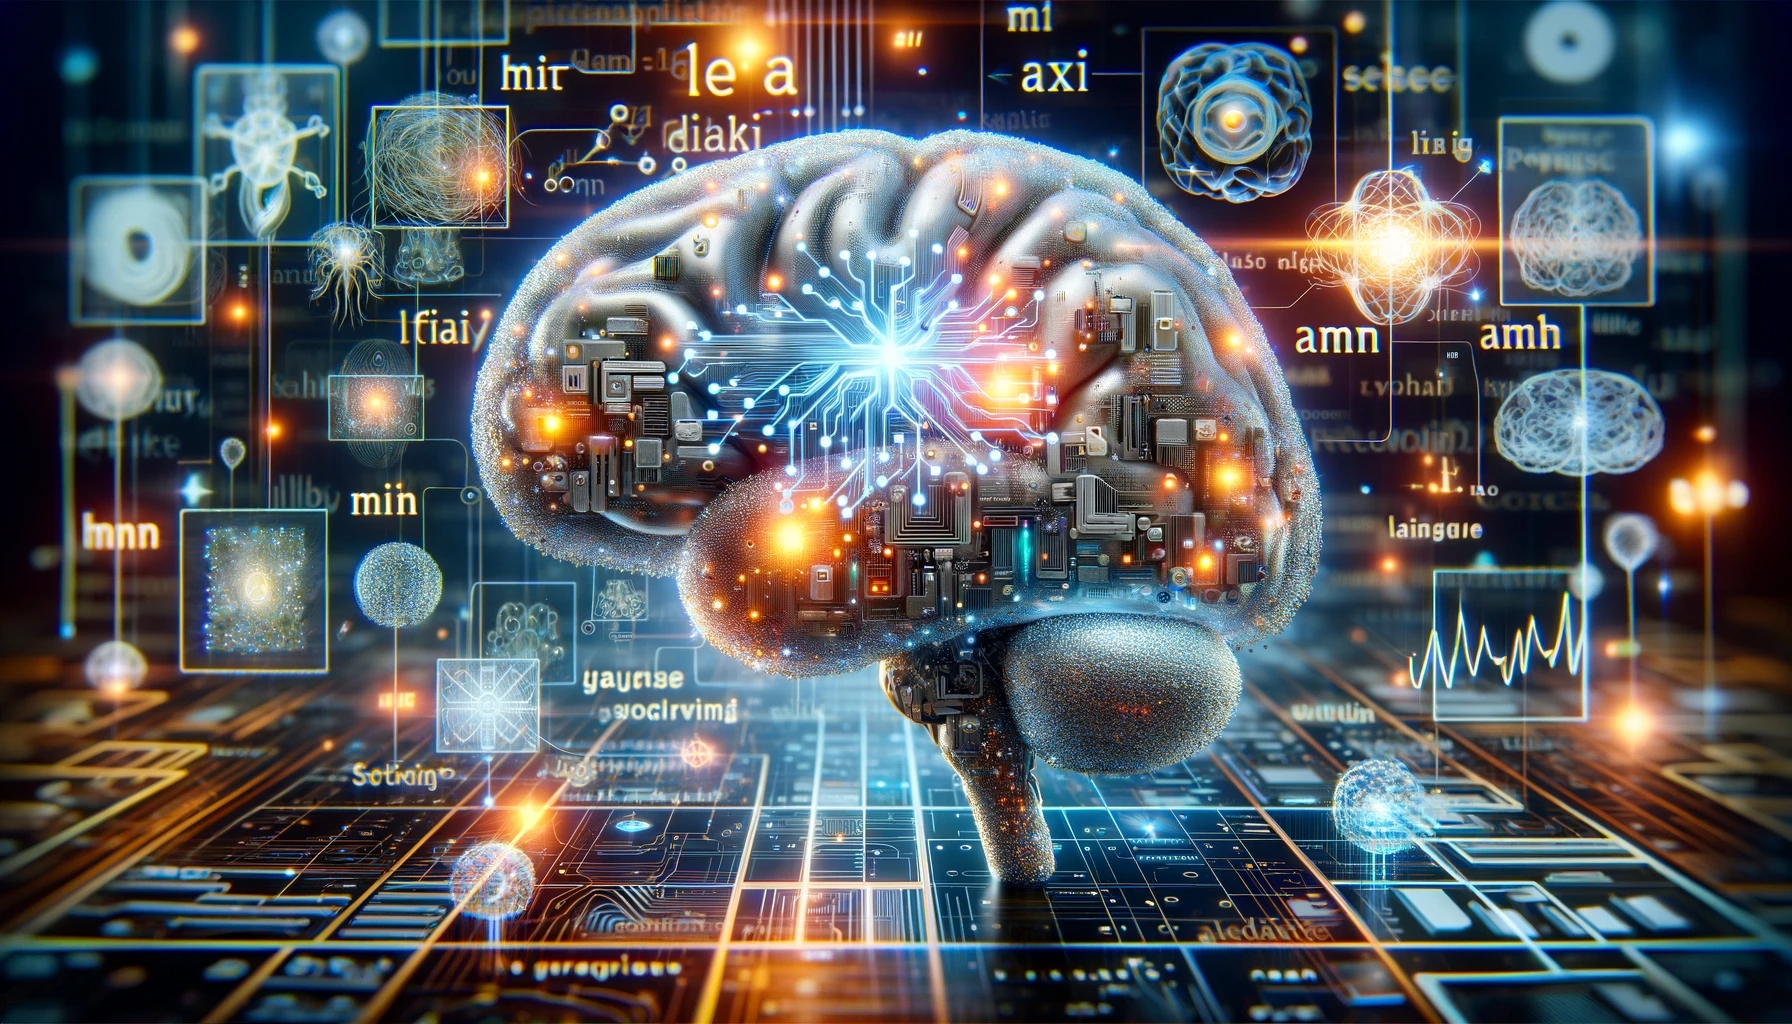 Avance científico: Modelos de IA predicen el lenguaje humano